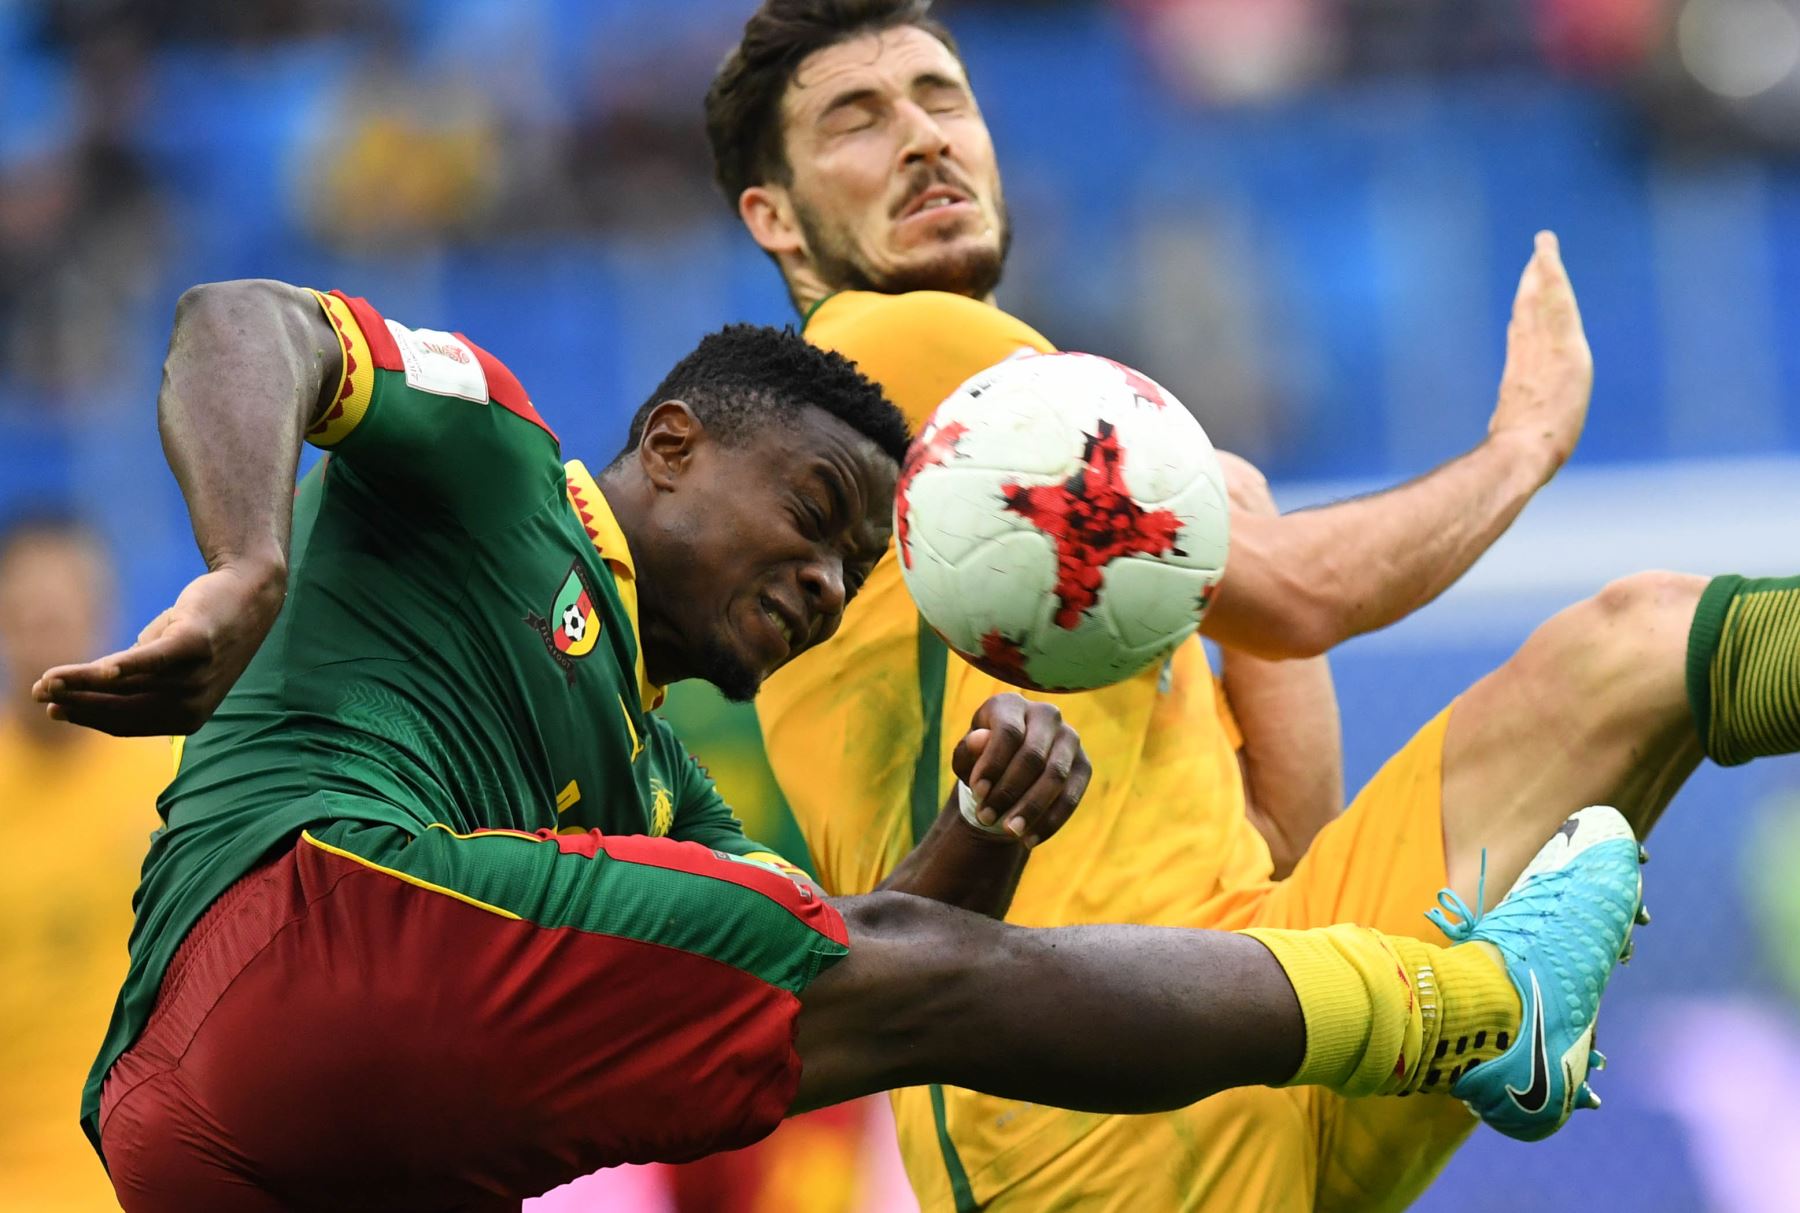 La selecciones de Camerún y Australia empataron a un gol (1-1) por la Copa de las Confederaciones en Rusia. Foto: AFP